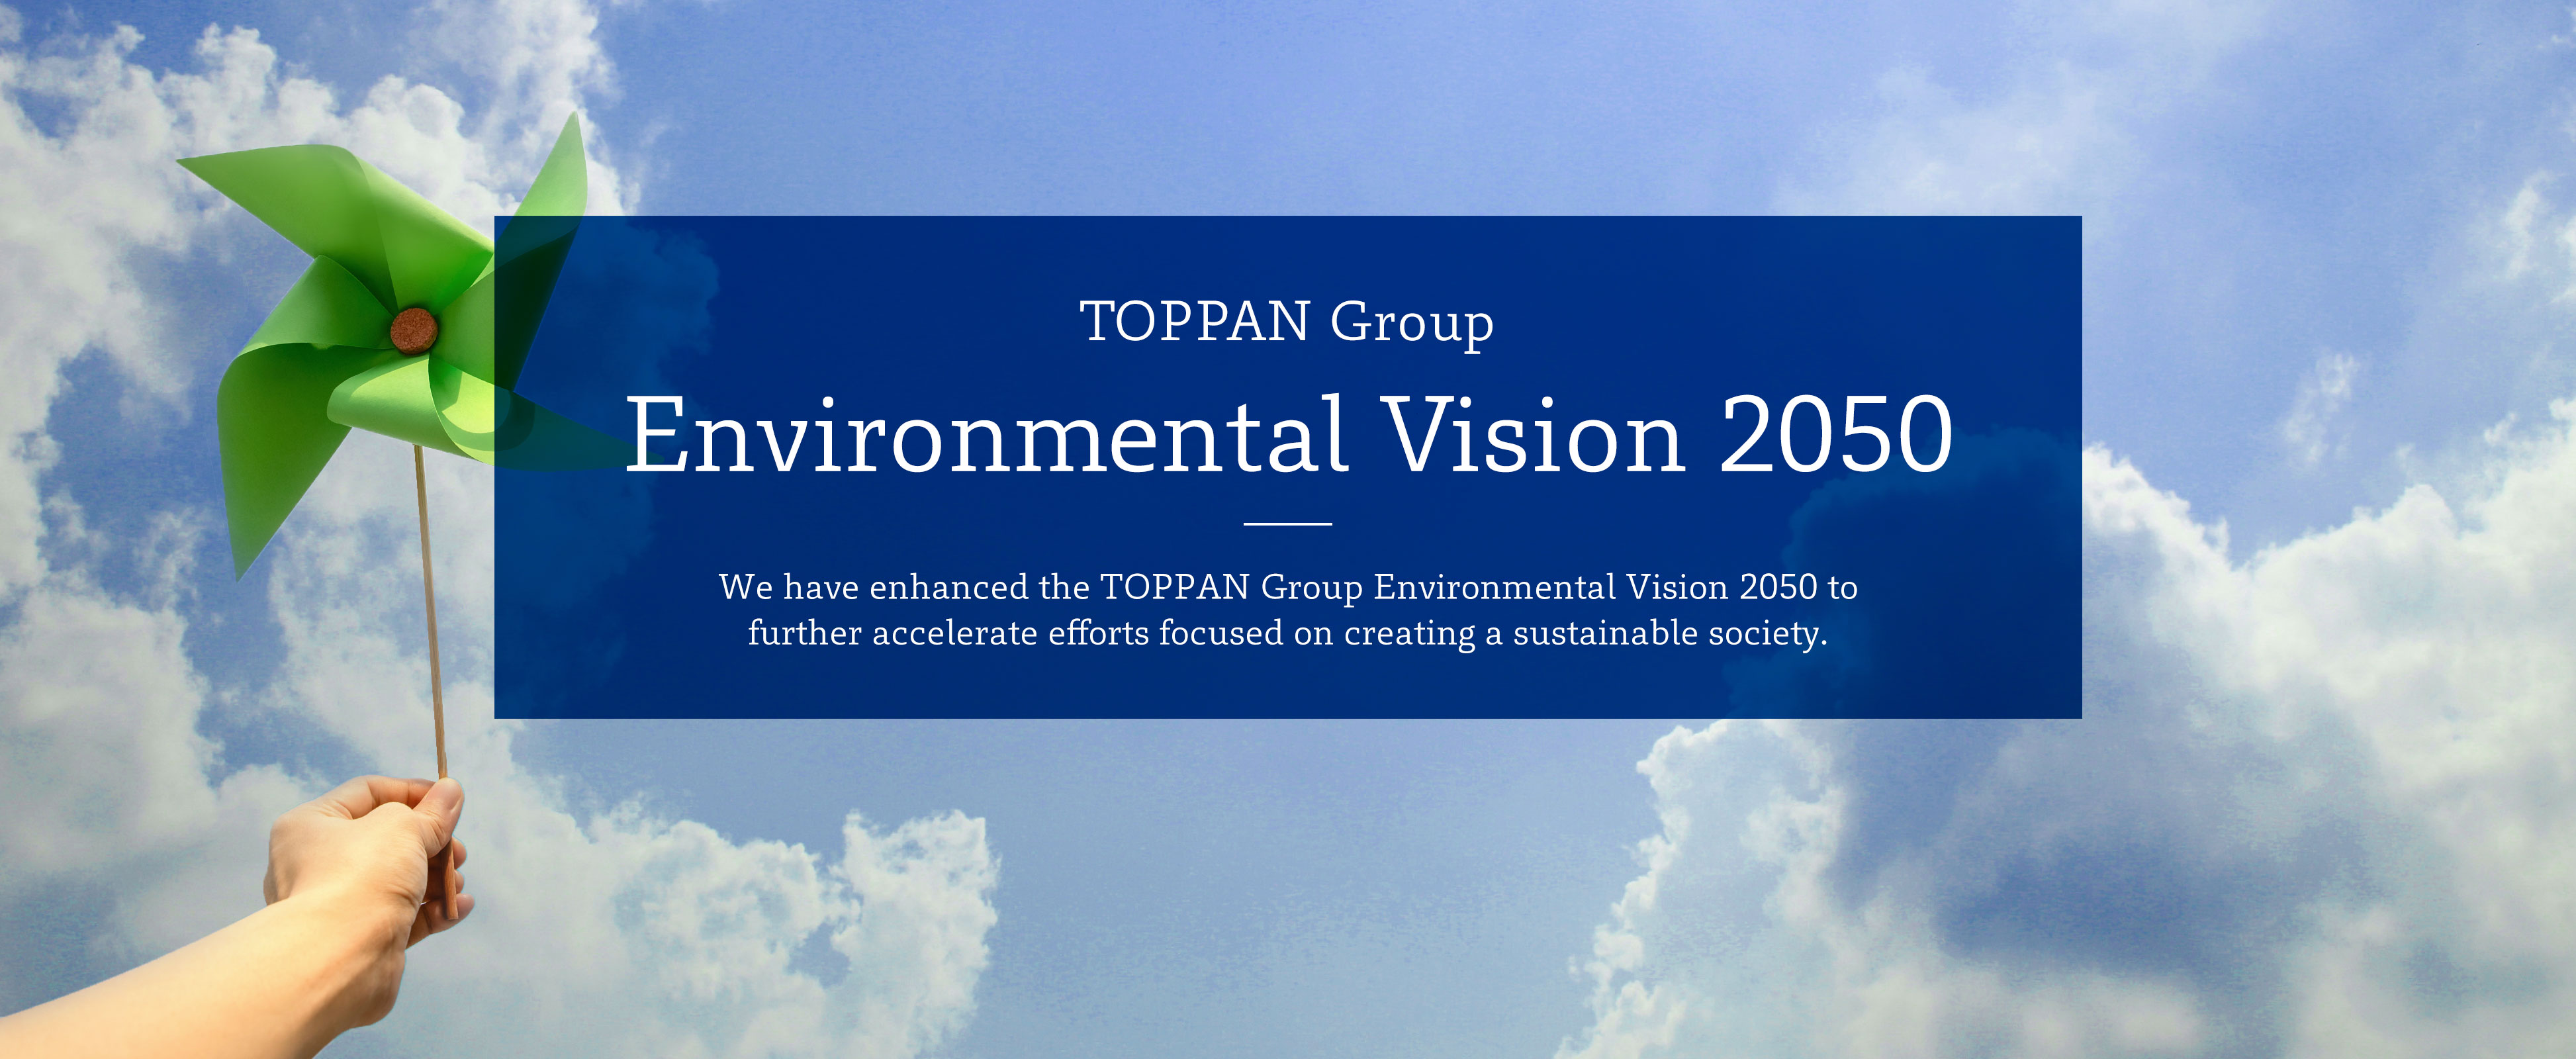 TOPPAN Group Environmental Vision 2050